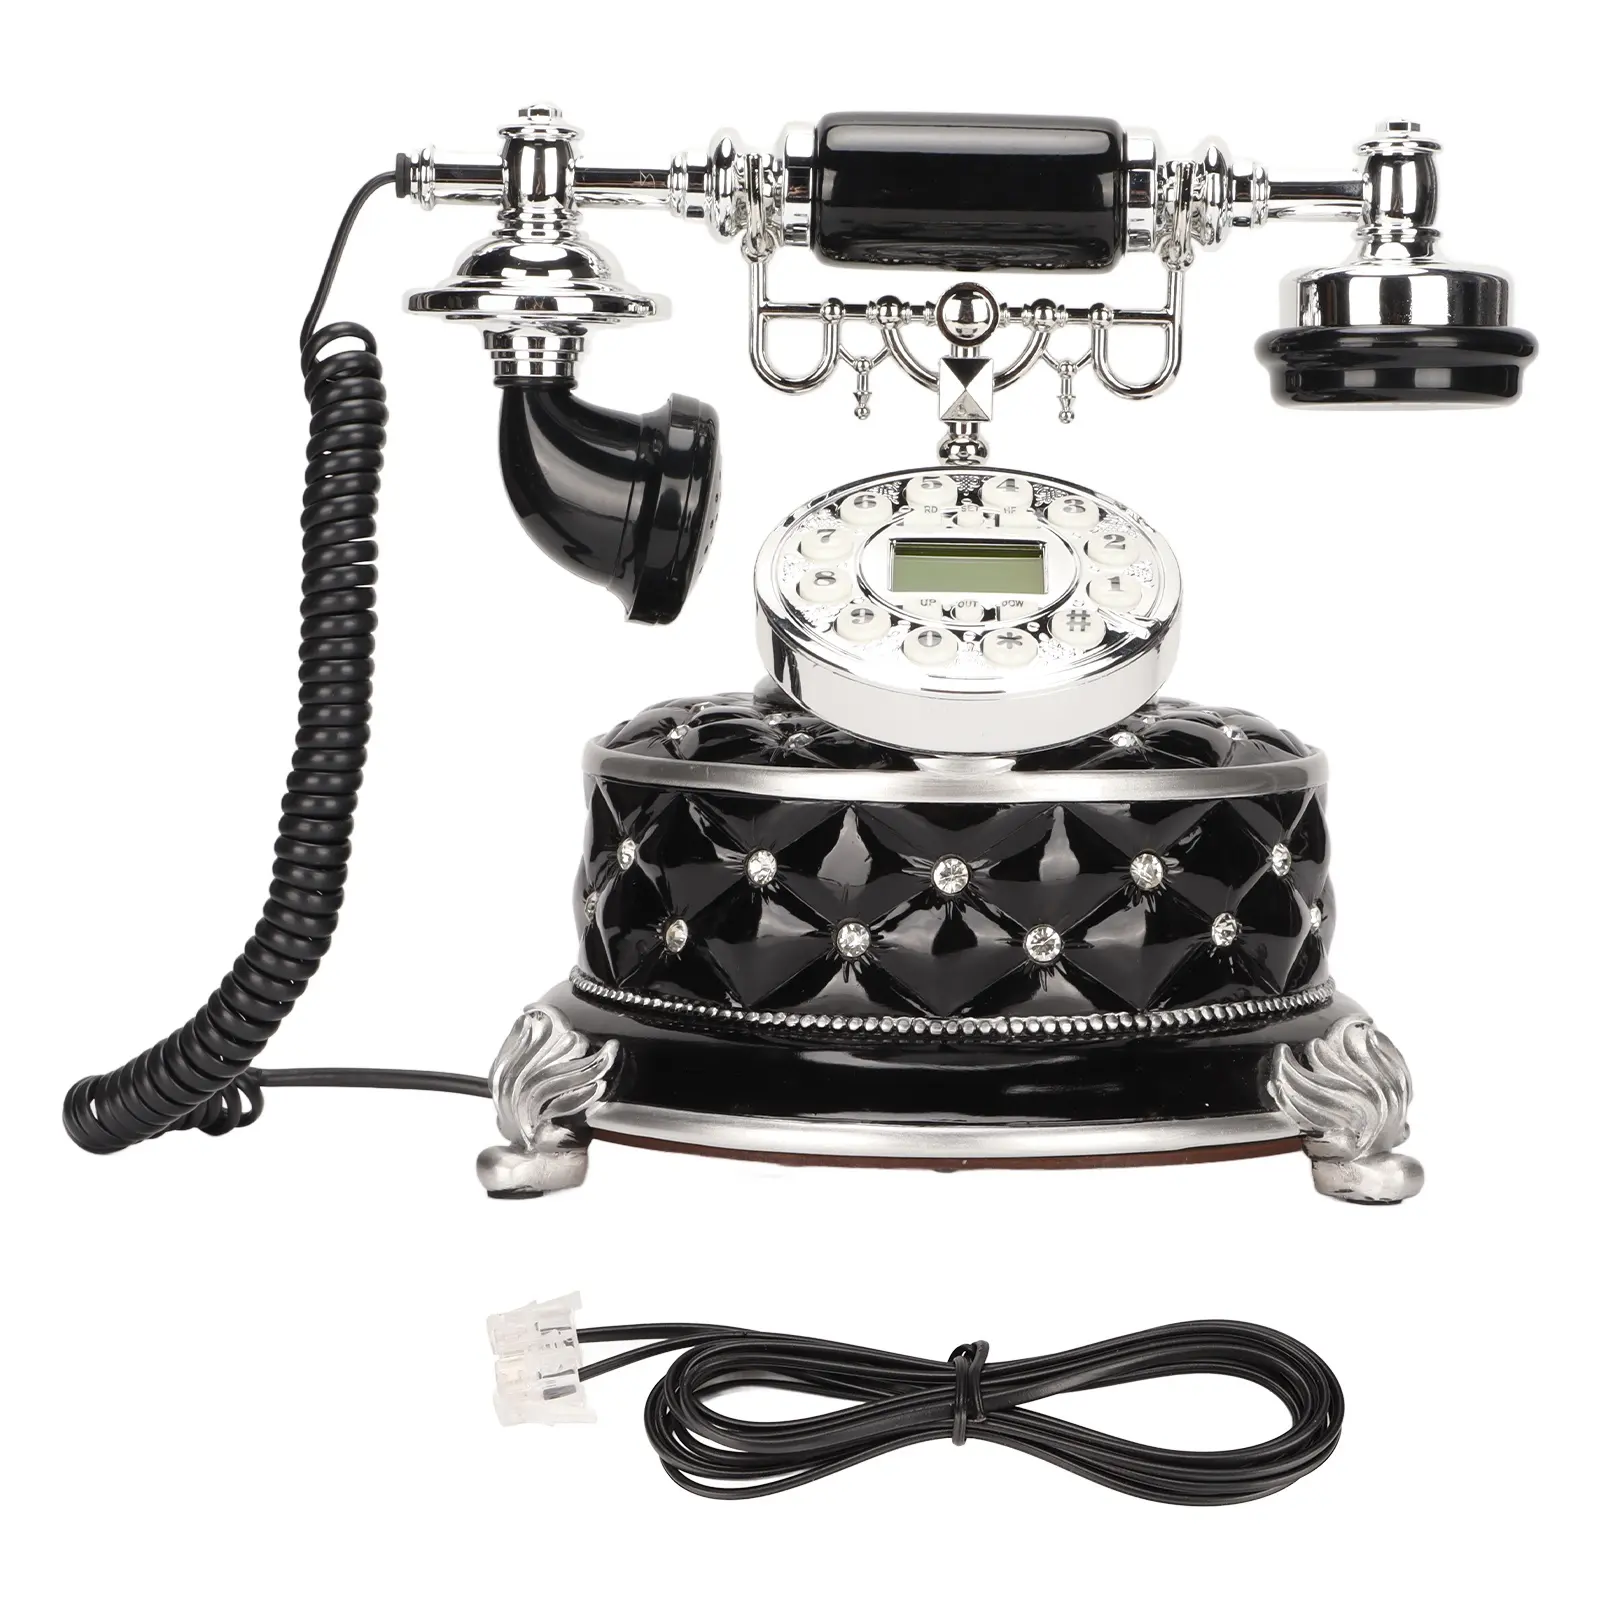 Pulsante fisso Vintage europeo composizione telefono fisso classico a mani libere con Display LCD per l'ufficio dell'hotel di casa